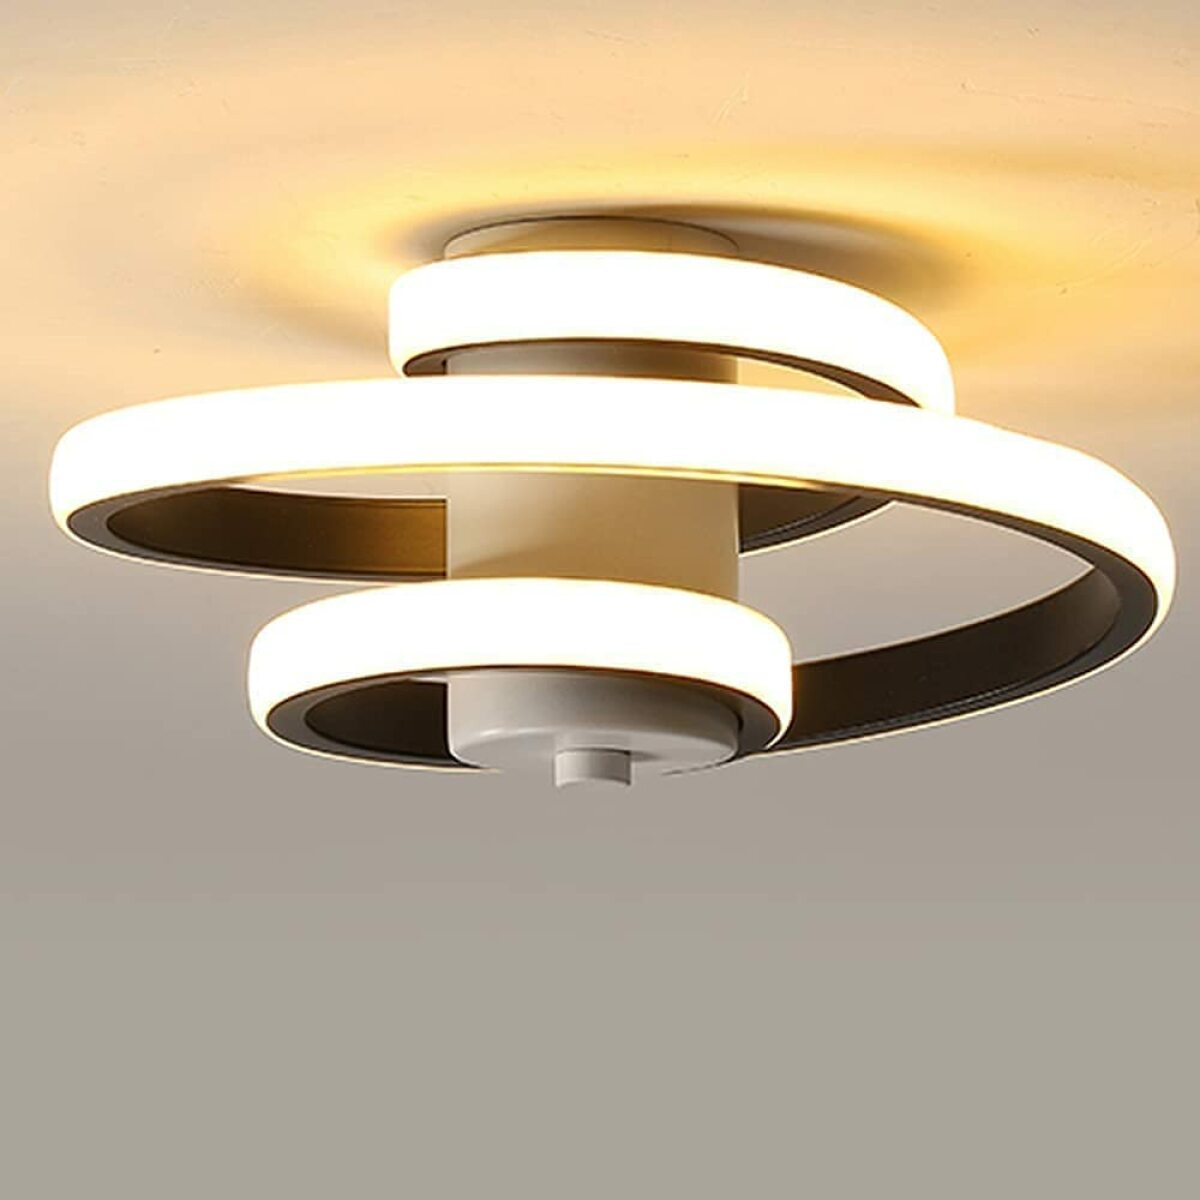 goeco plafonnier led moderne, 24w lampe de plafond en aluminium et acrylique, créatif en forme de spirale luminaire plafonnier pour salon chambre cuisine couloir salle de bains (blanc chaud 3000k) noir